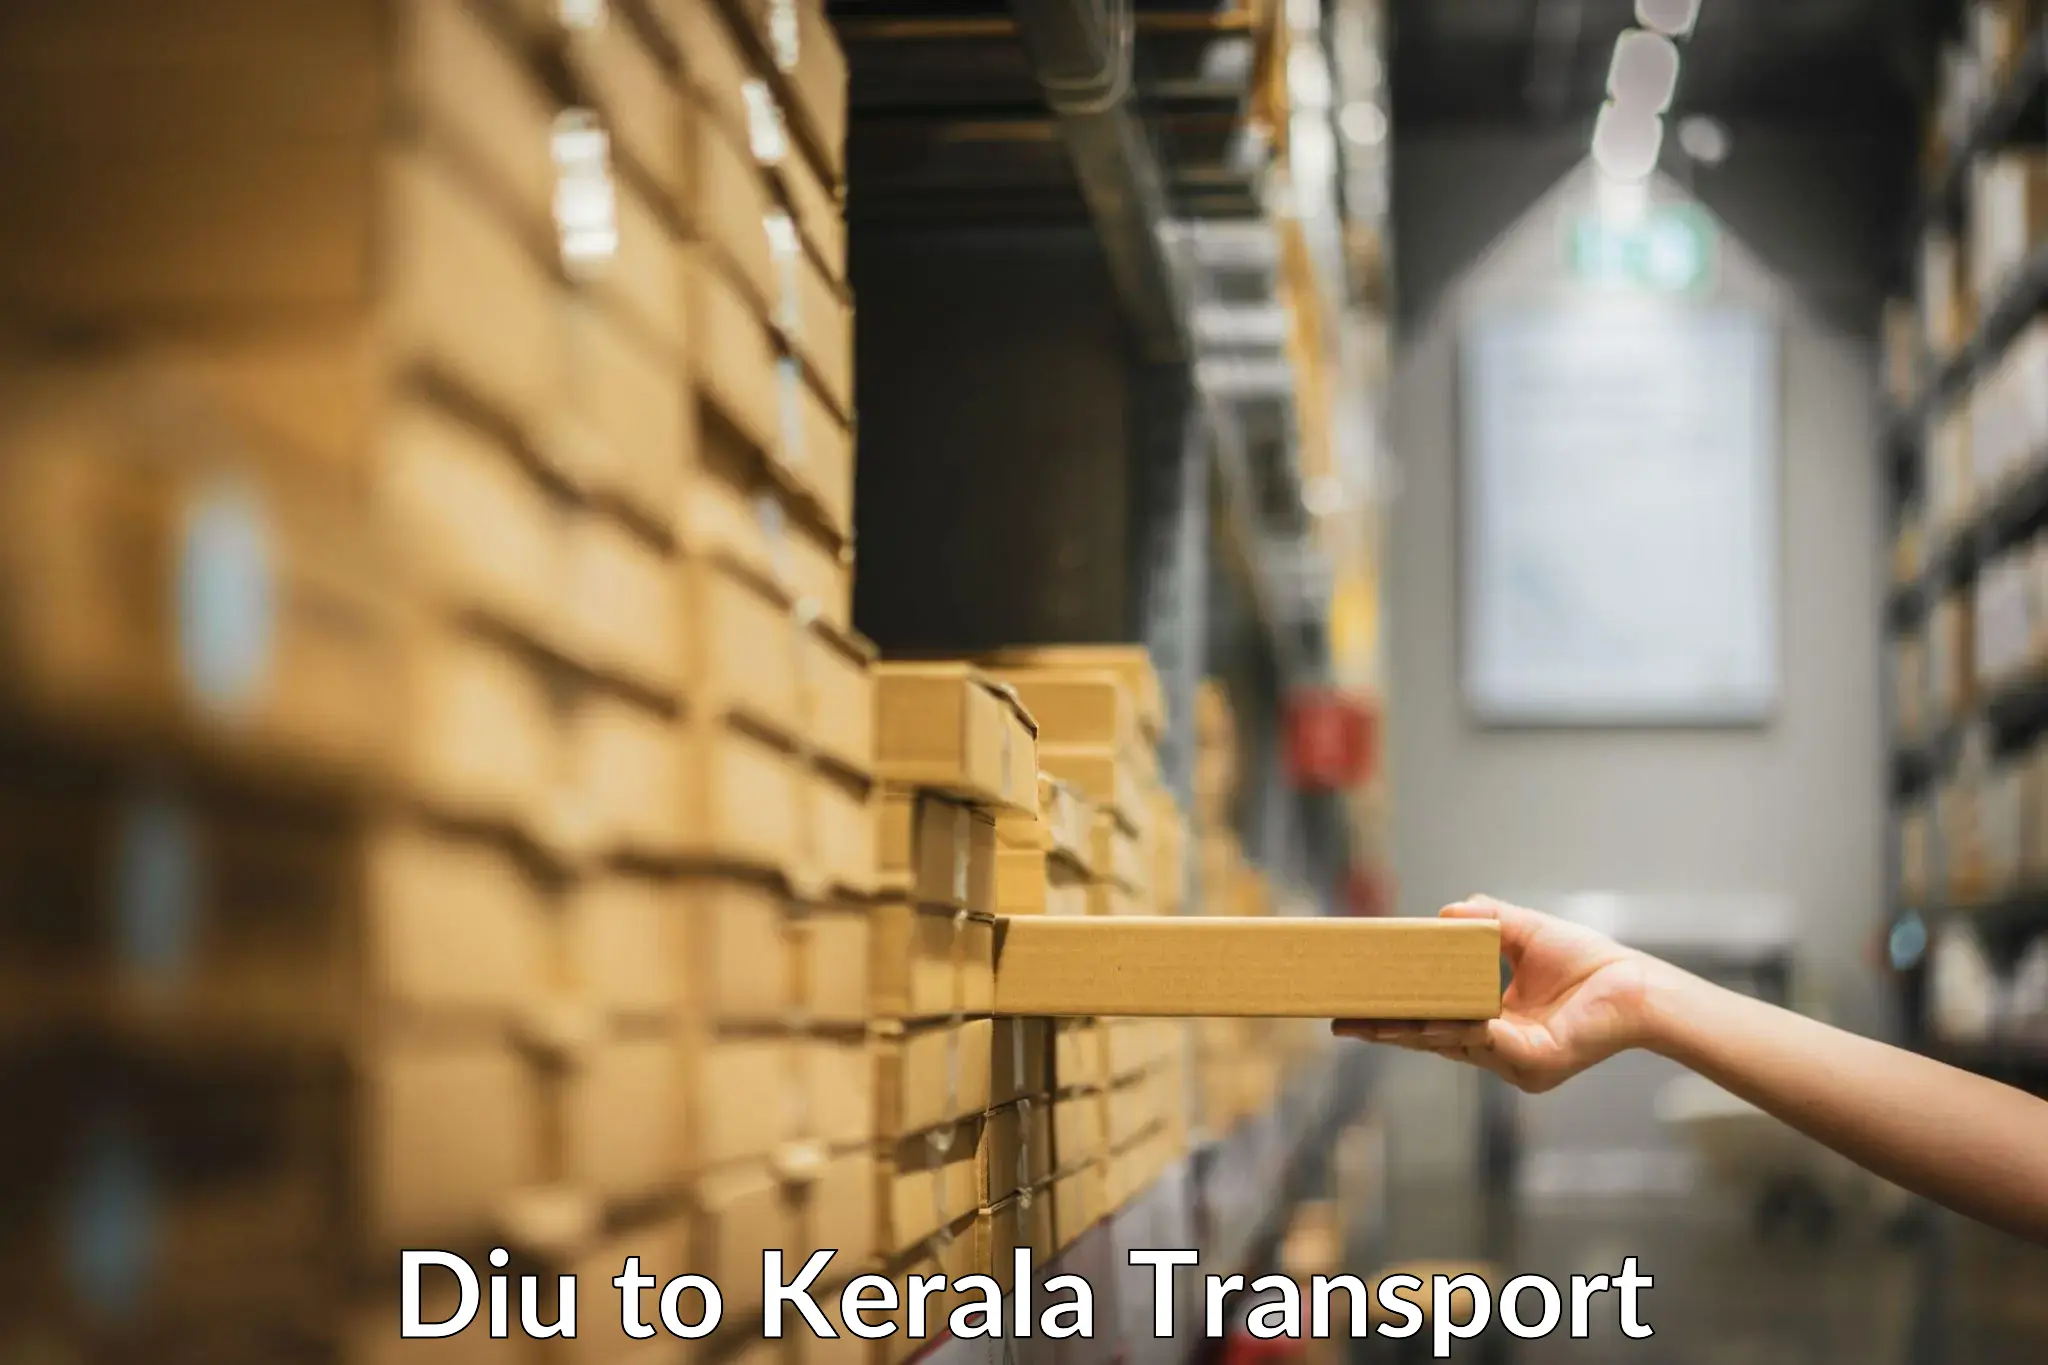 Furniture transport service Diu to Munnar